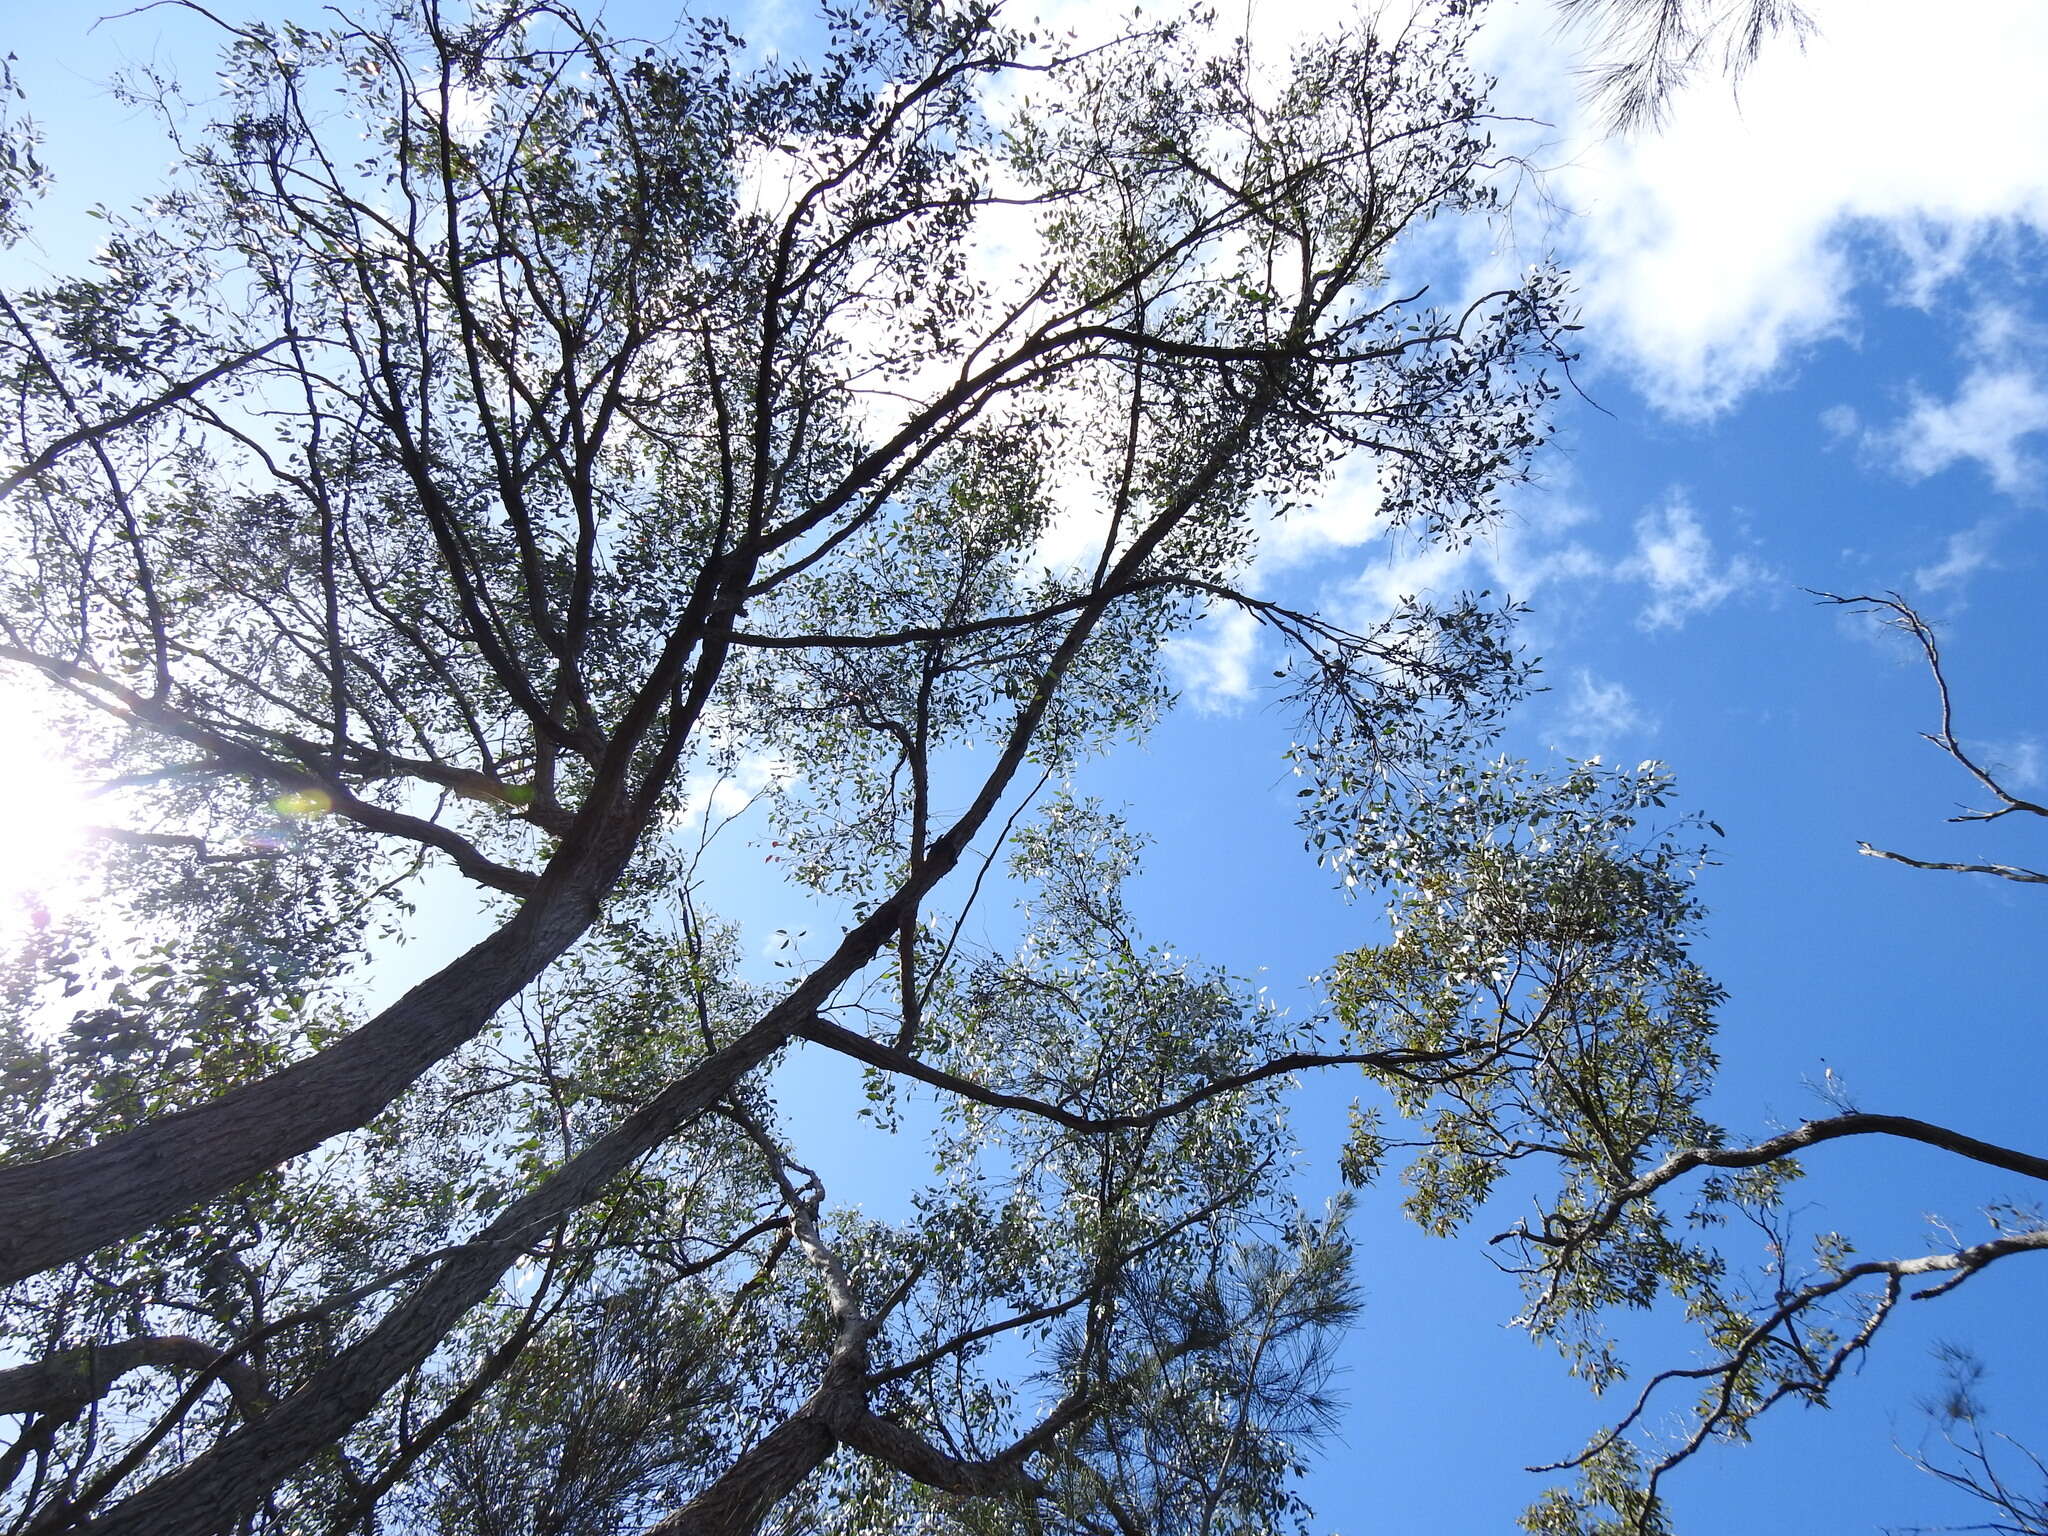 Image of Eucalyptus tindaliae Blakely